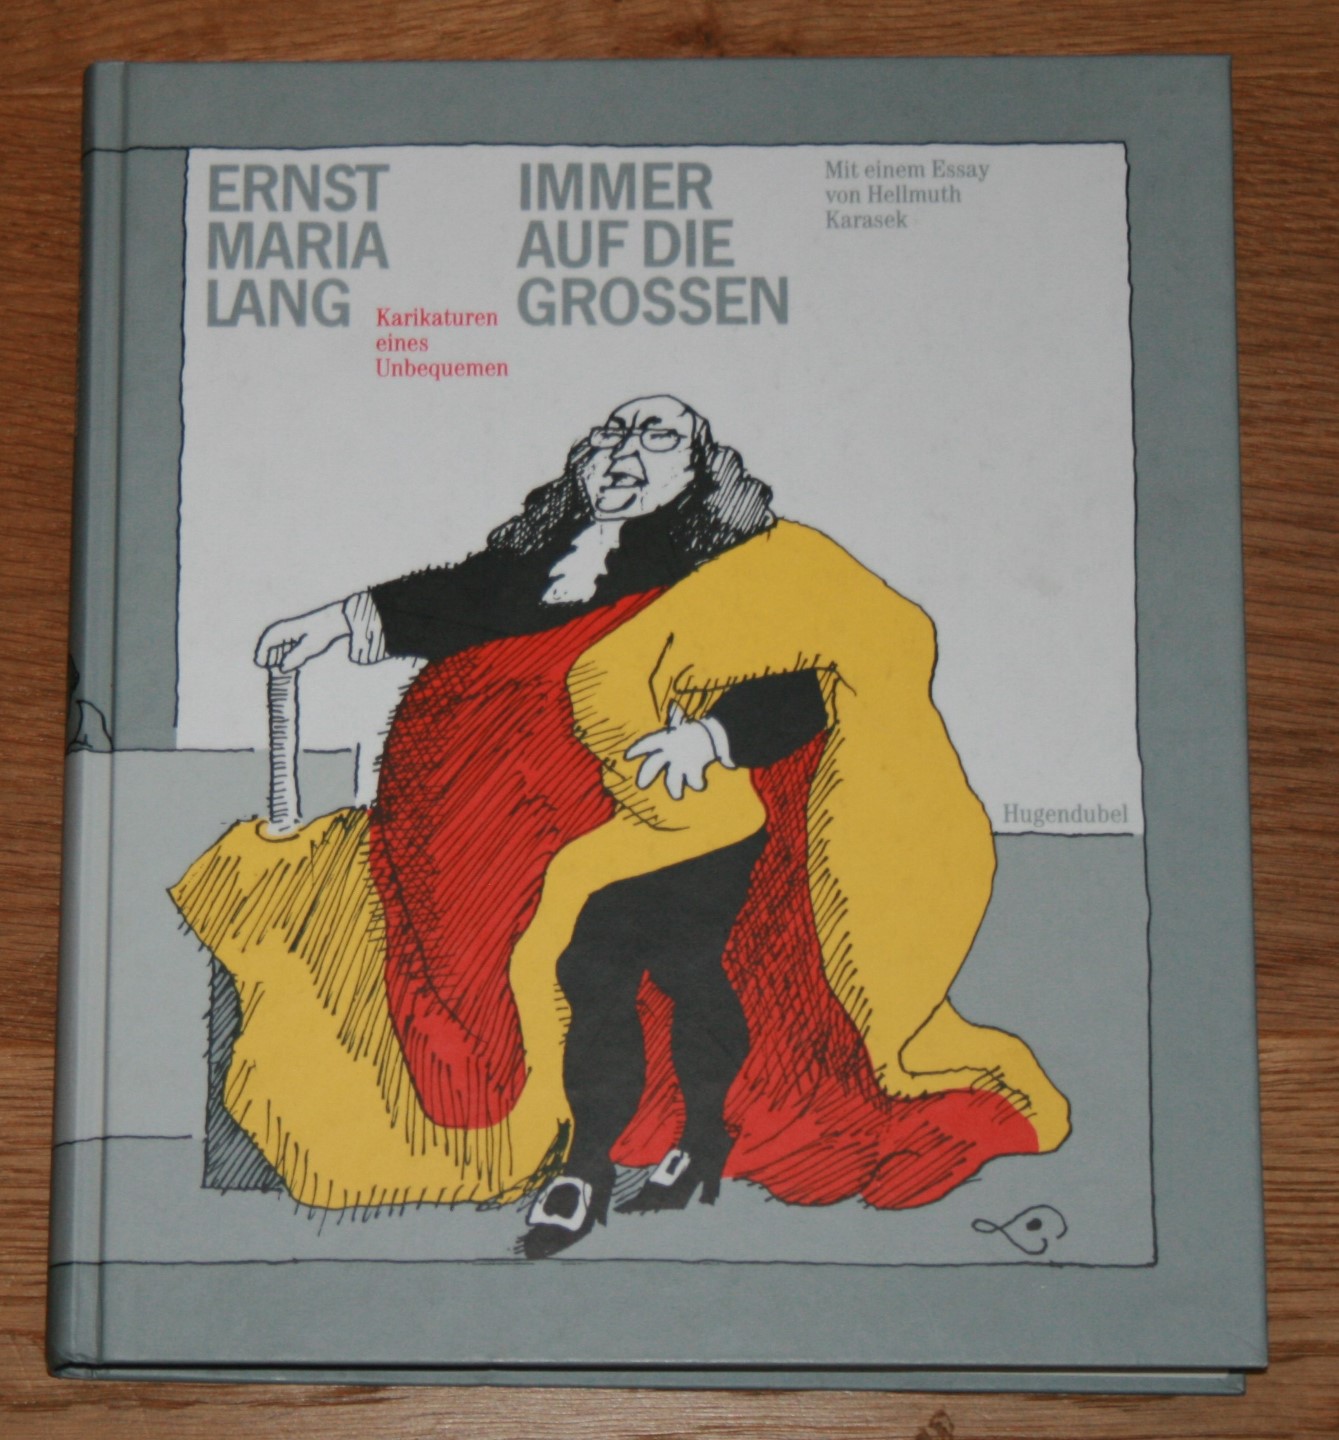 Immer auf die Grossen: Karikaturen eines Unbequemen. - Lang, Ernst Maria und Hellmuth Karasek (Essay)